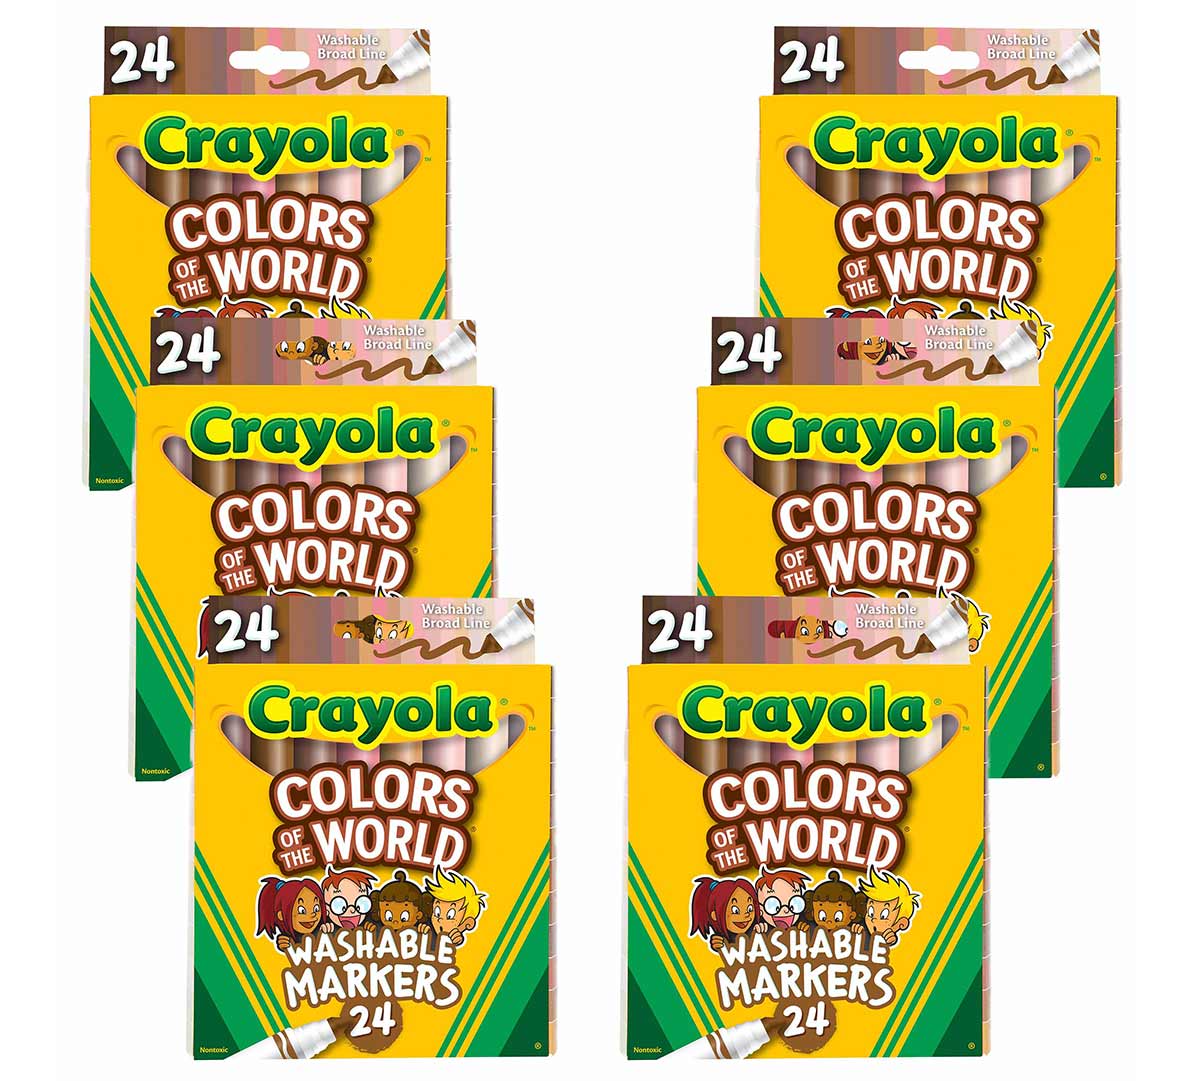 https://shop.crayola.com/on/demandware.static/-/Sites-crayola-storefront/default/dw1abebecb/images/58-7806_PDP_01.jpg